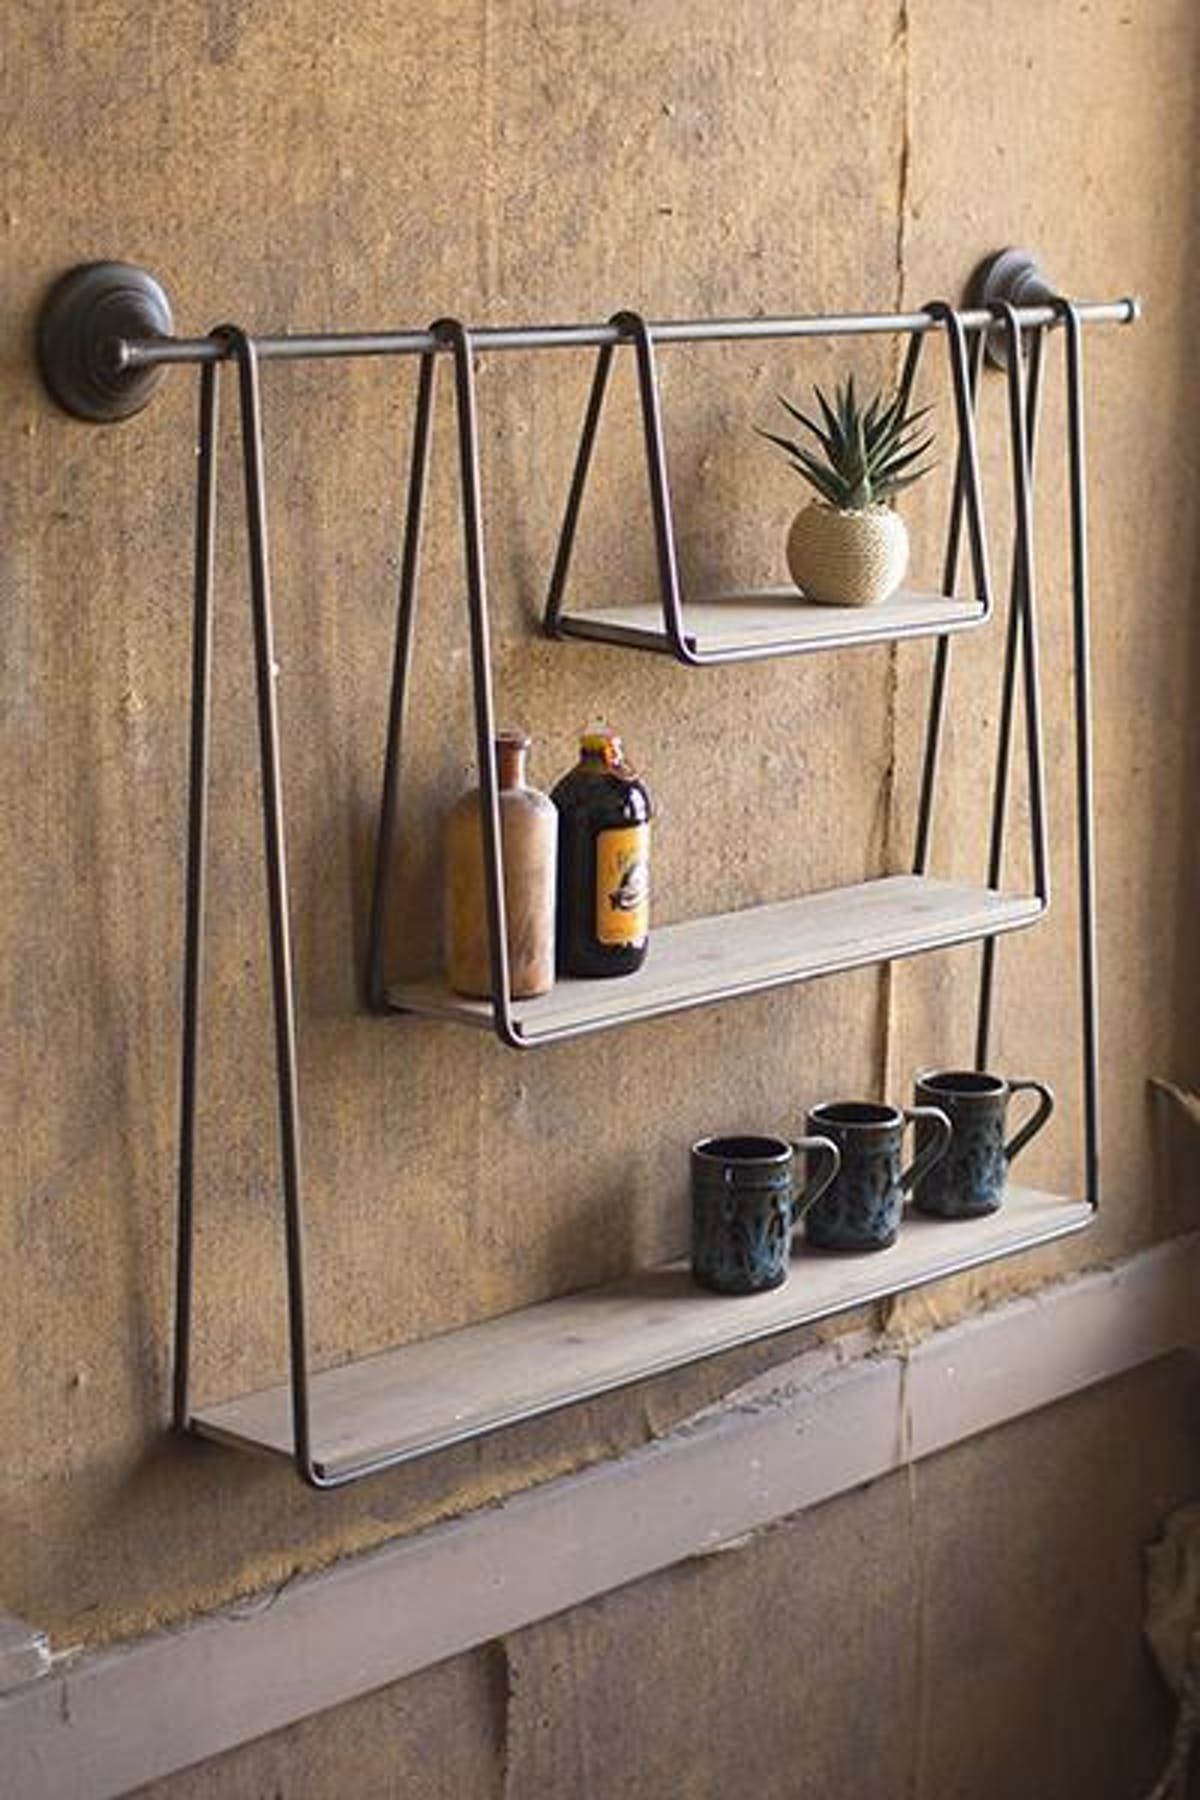 Kalalou Wood And Metal Triple Hanging Shelf - Kalalou Wood And Metal Triple Hanging Shelf -   19 diy Box shelf ideas